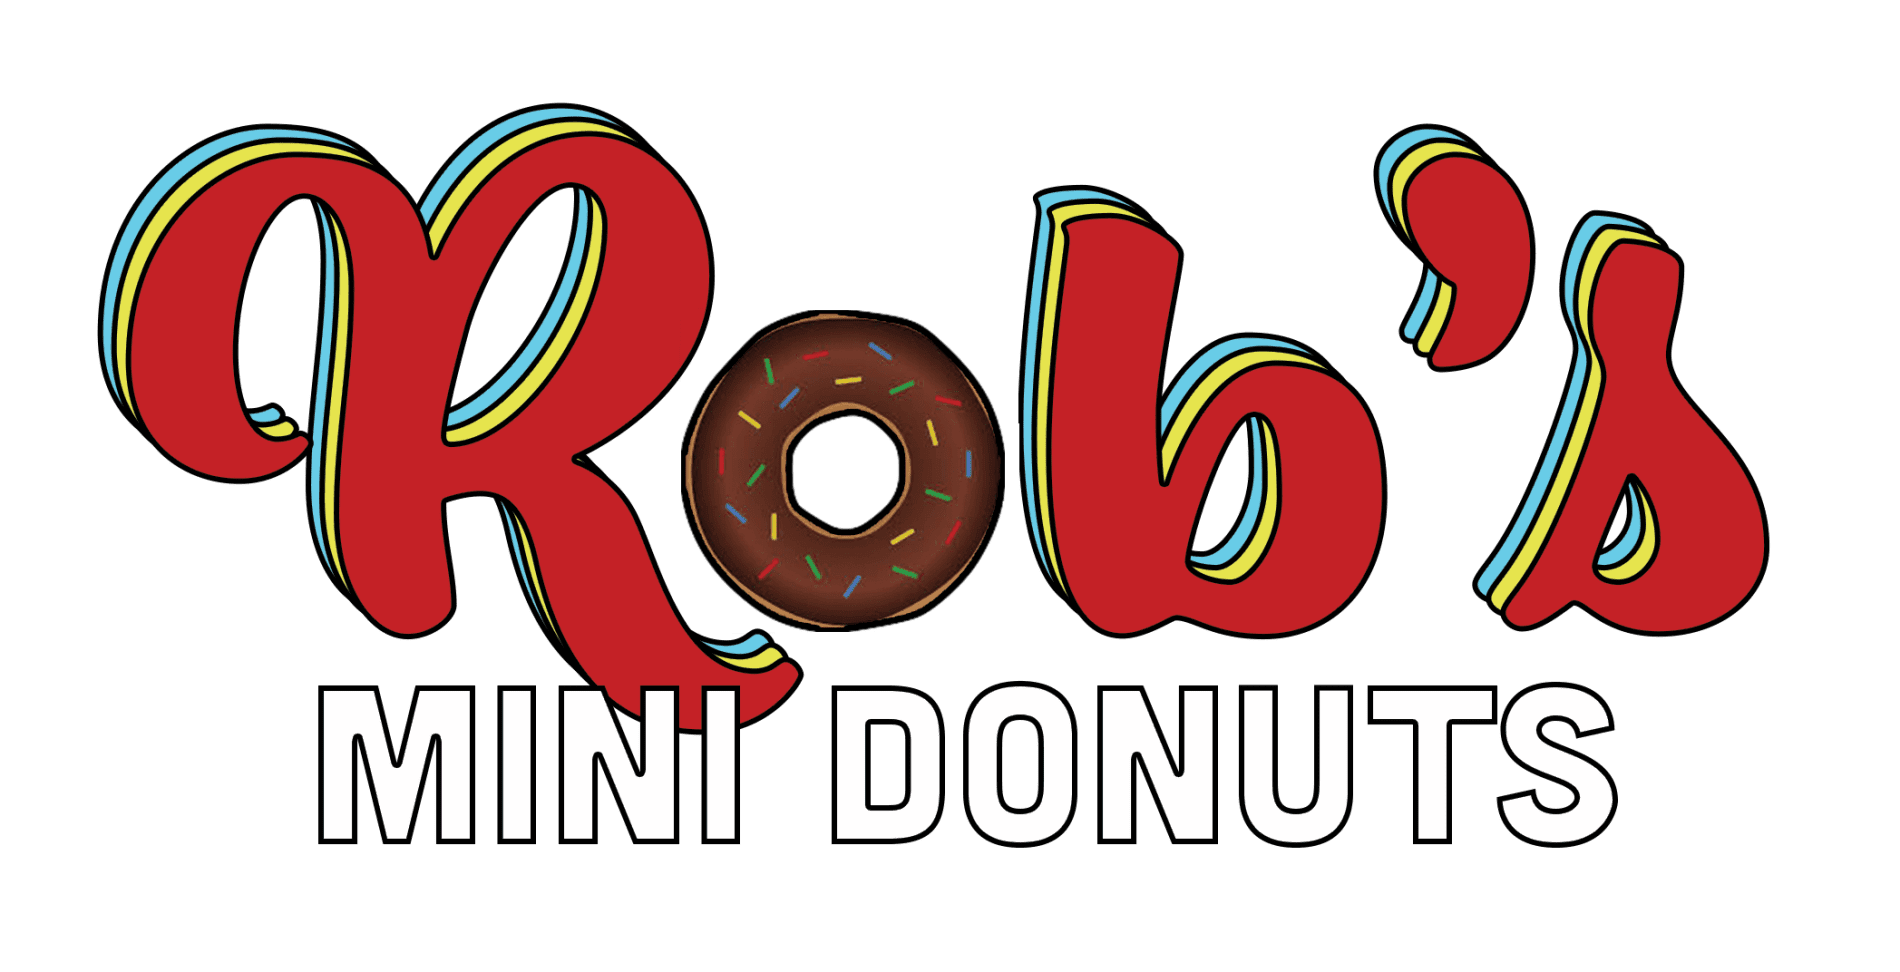 Rob's Mini Donuts